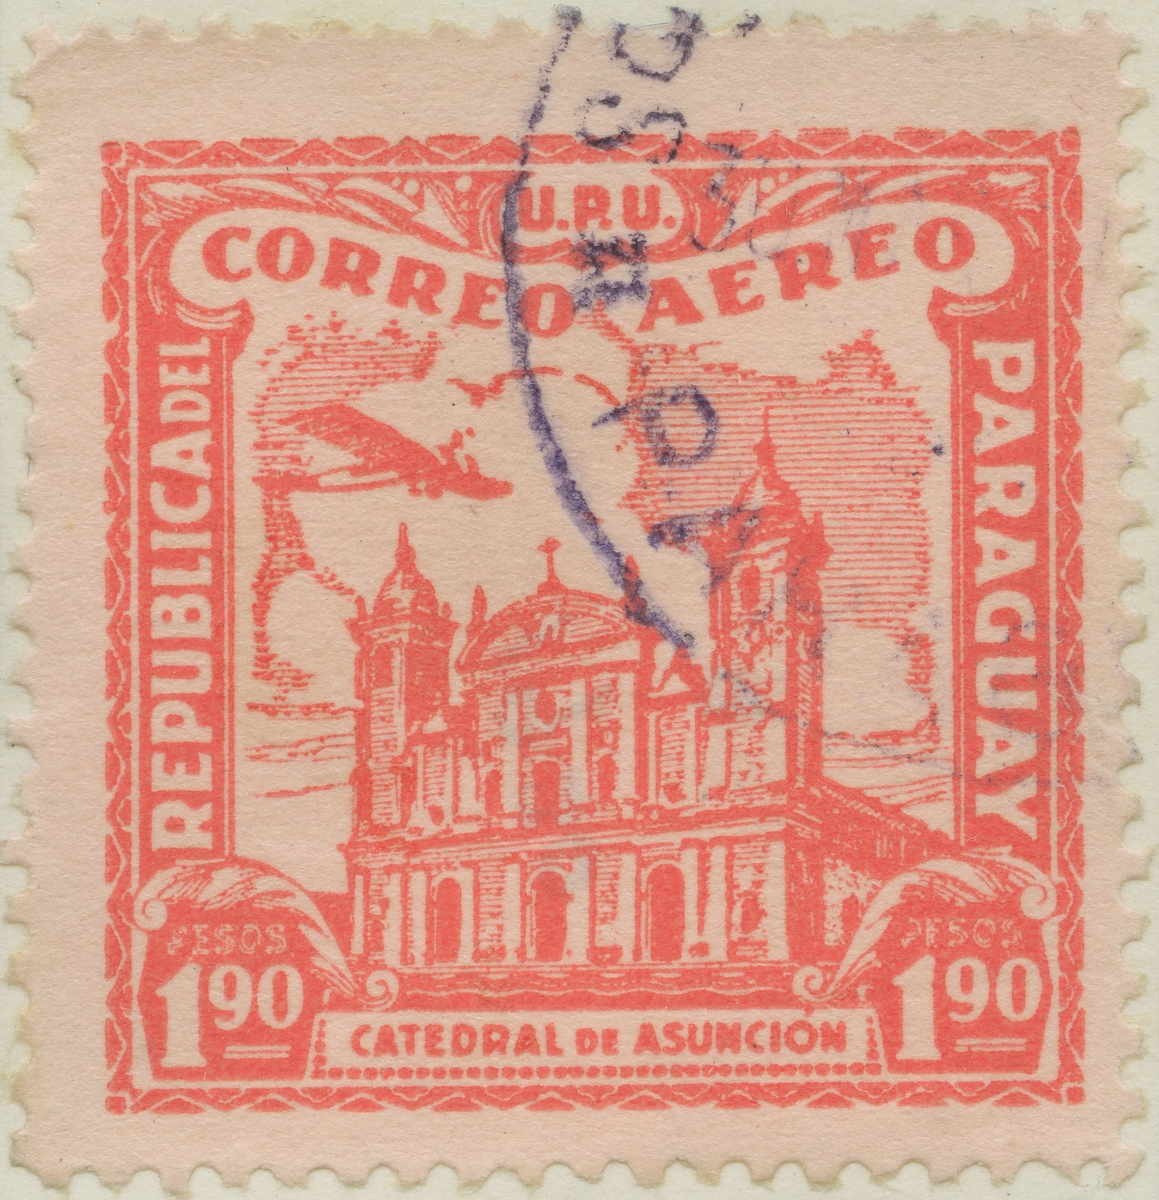 Frimärke ur Gösta Bodmans filatelistiska motivsamling, påbörjad 1950.
Frimärke från Paraguay, 1930. Motiv av katedralen Asunción.